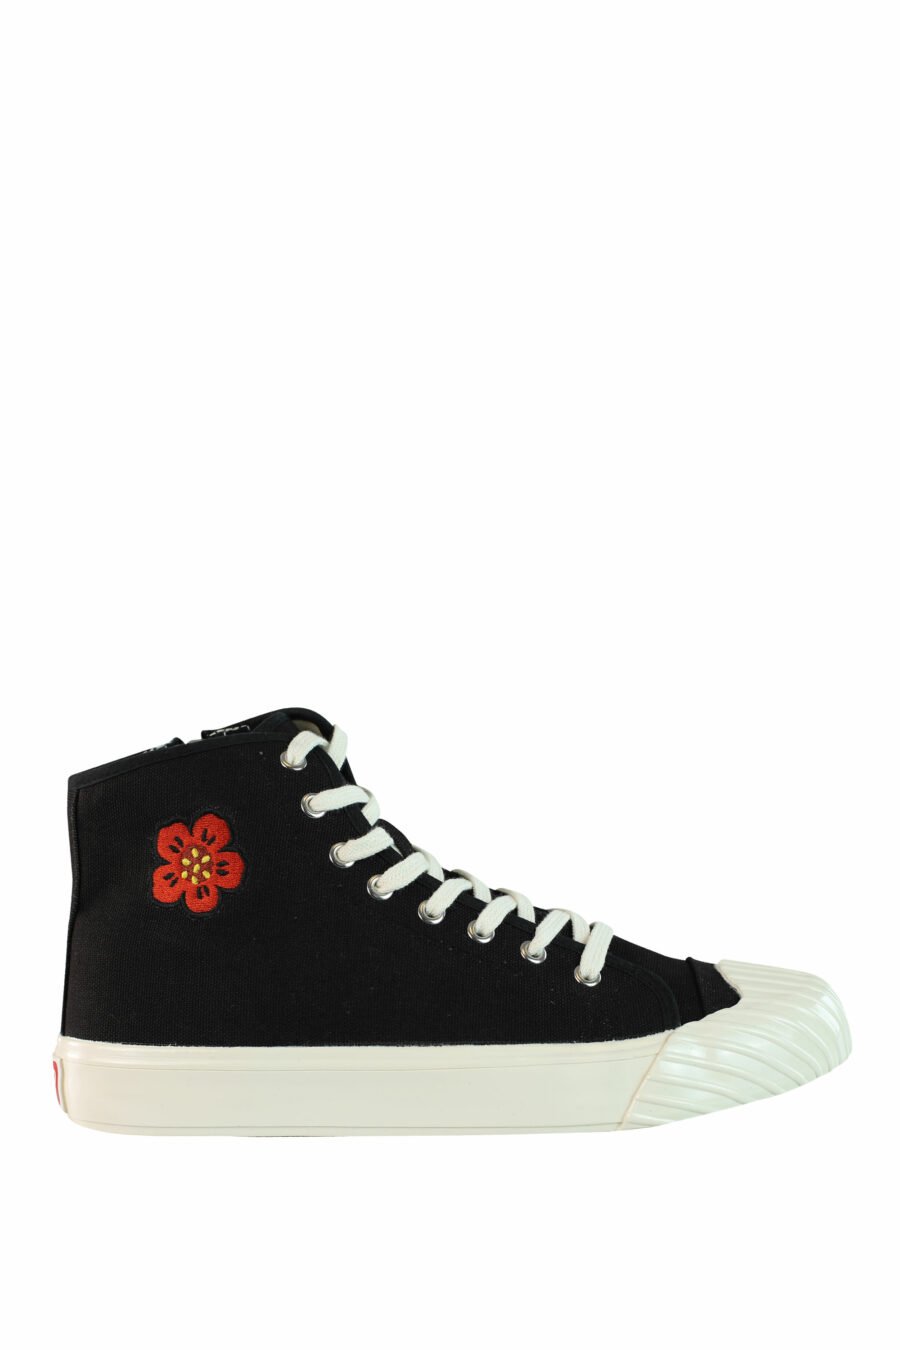 Zapatillas altas negras con logo "boke flower" - IMG 1019